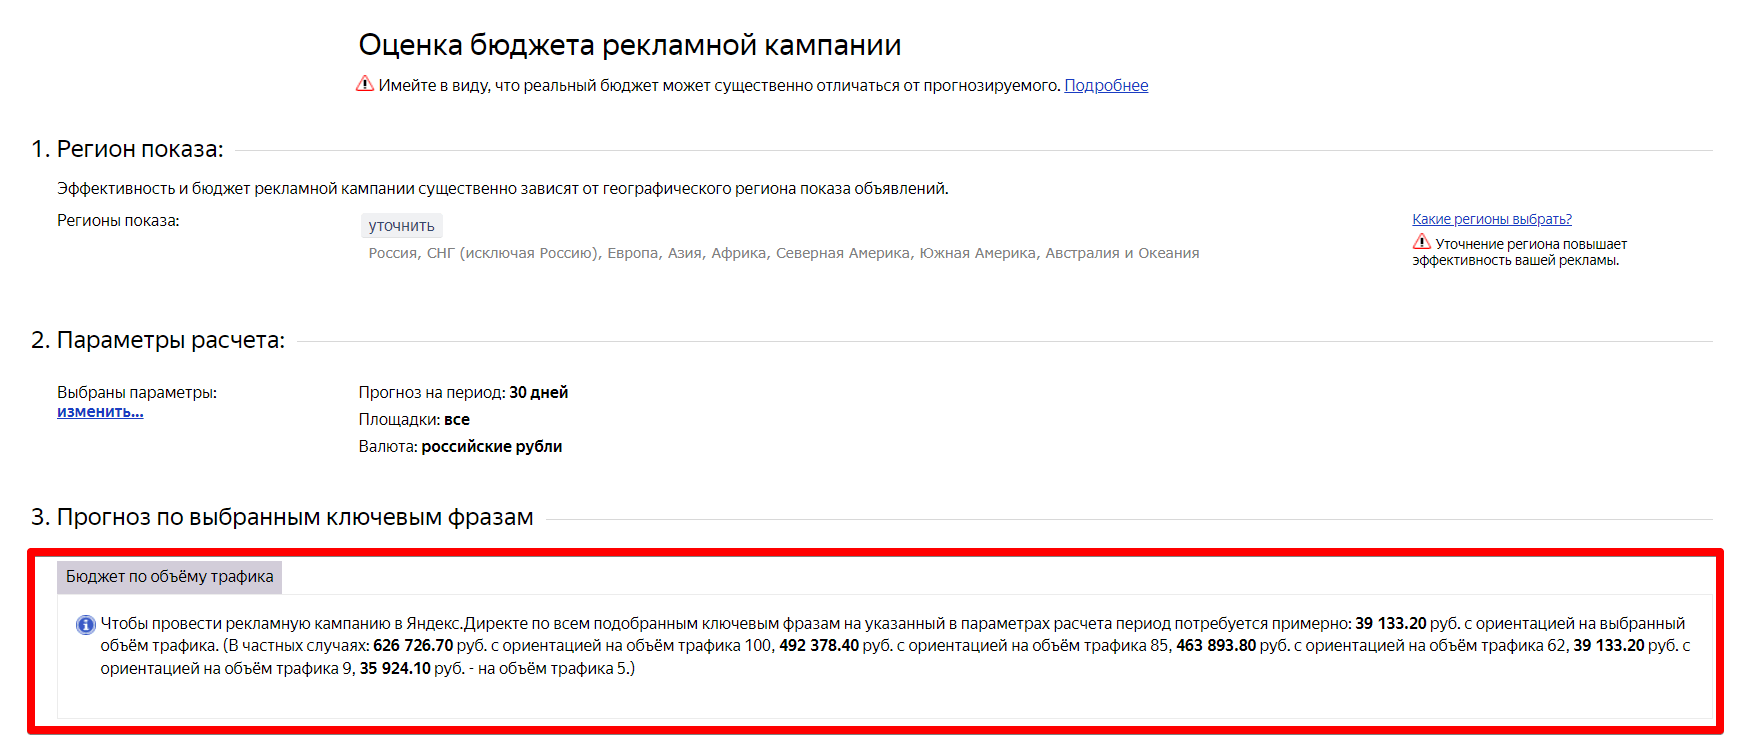 Прогноз в Яндекс Директ.